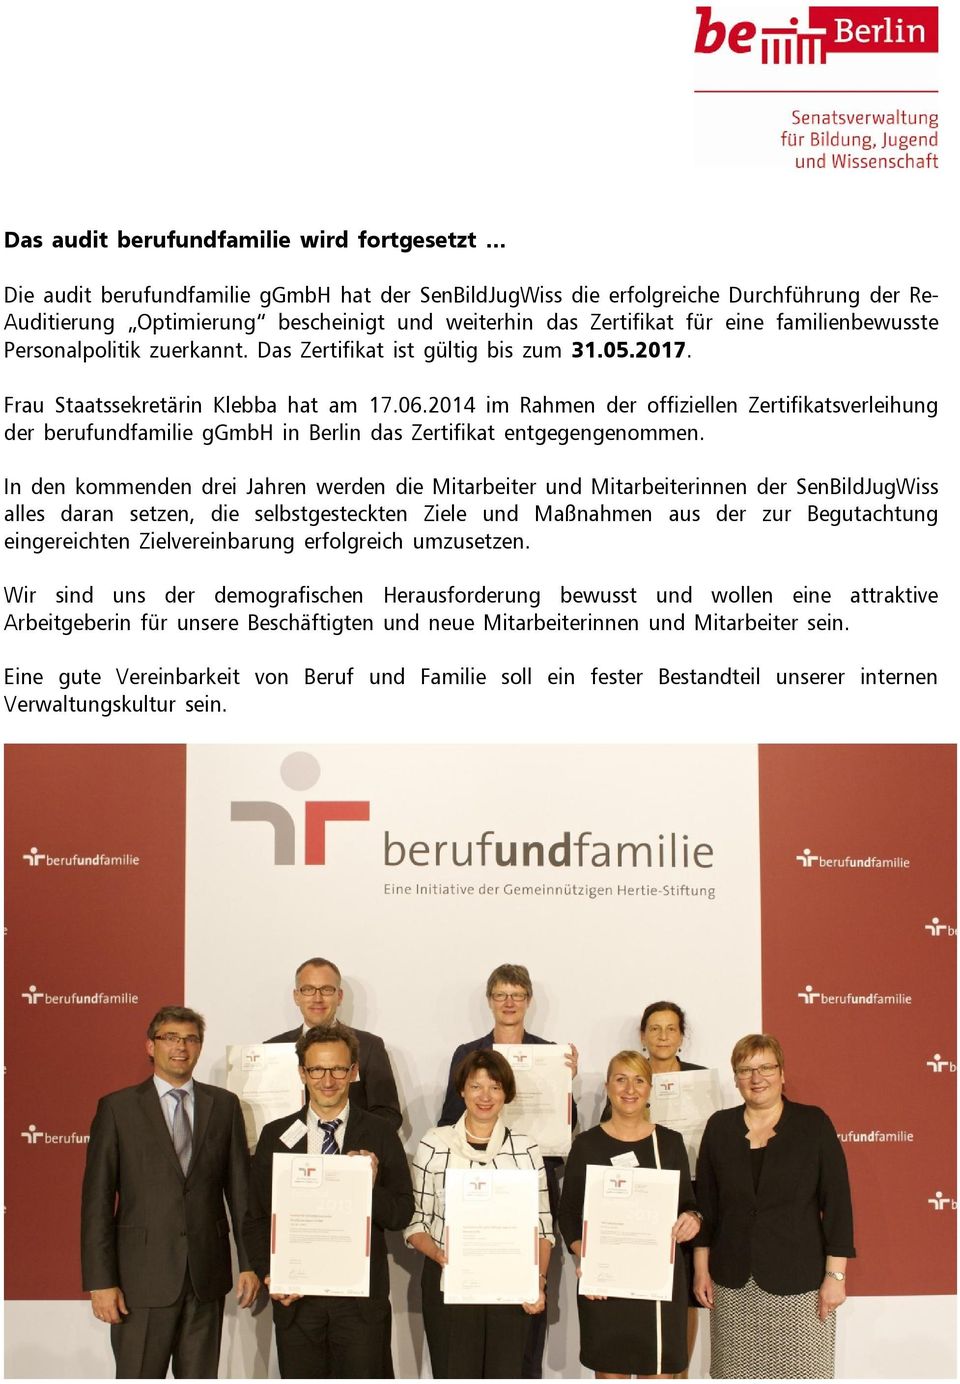 2014 im Rahmen der offiziellen Zertifikatsverleihung der berufundfamilie ggmbh in Berlin das Zertifikat entgegengenommen.